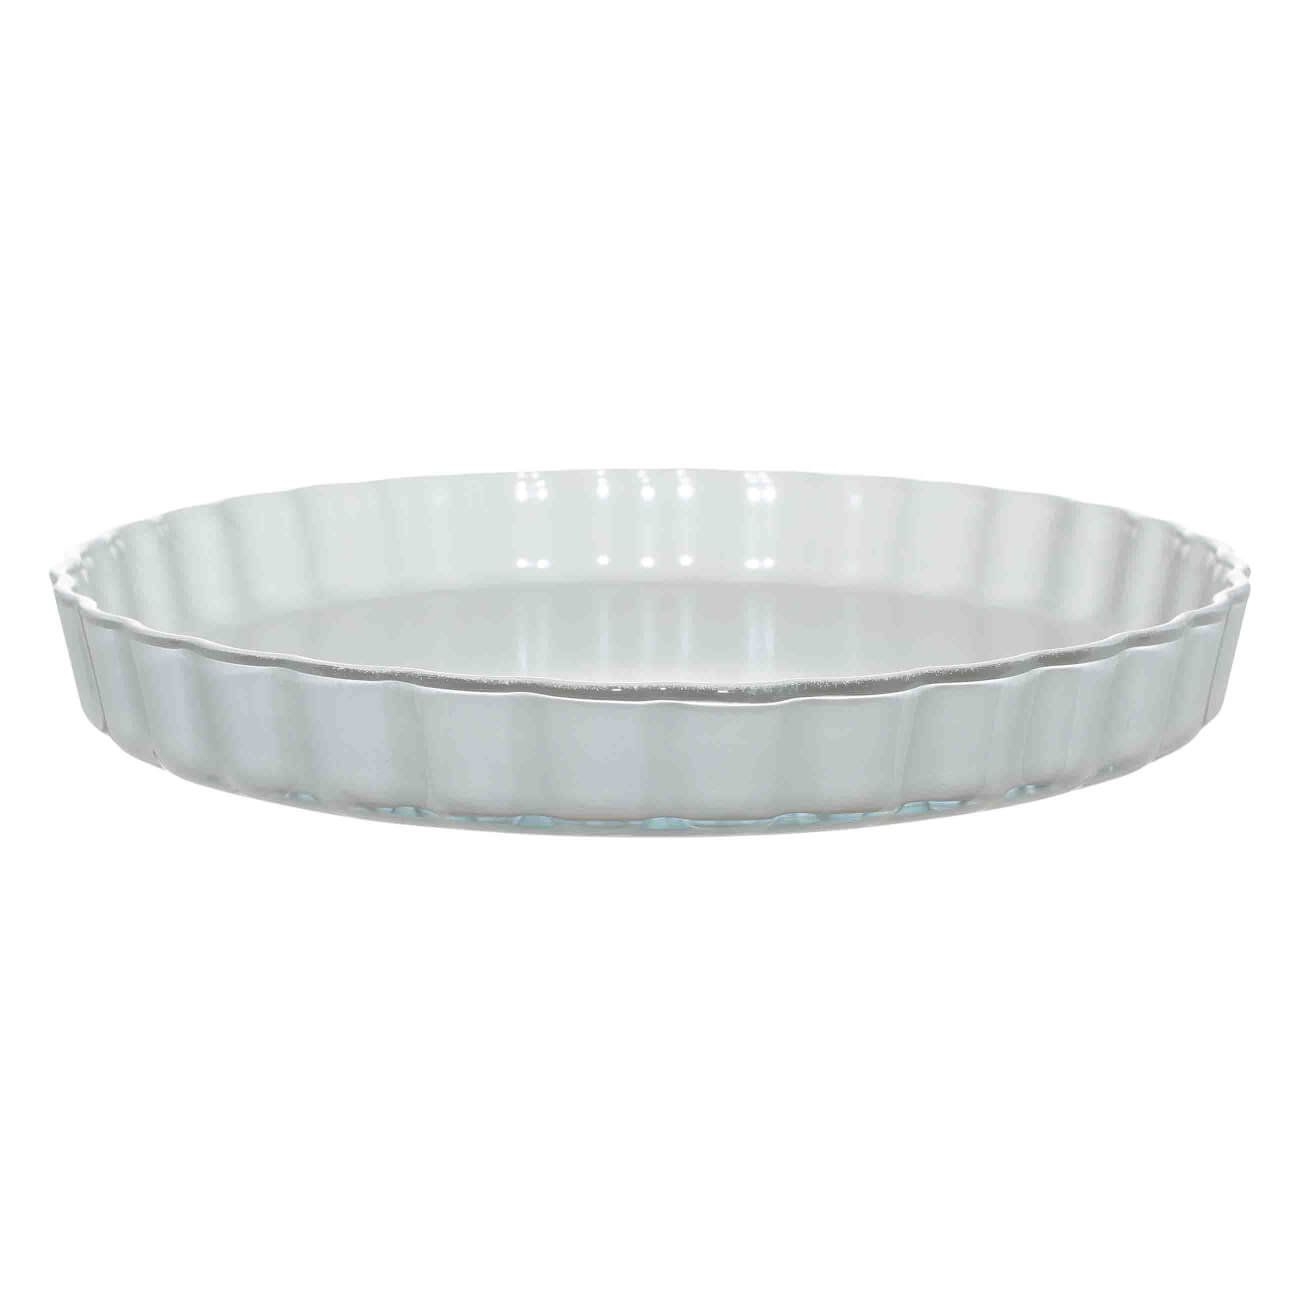 Форма для запекания, 27 см, стекло Т, с покрытием, круглая, бежевая, Cook coating ваза nicole стекло бежевая 20 см